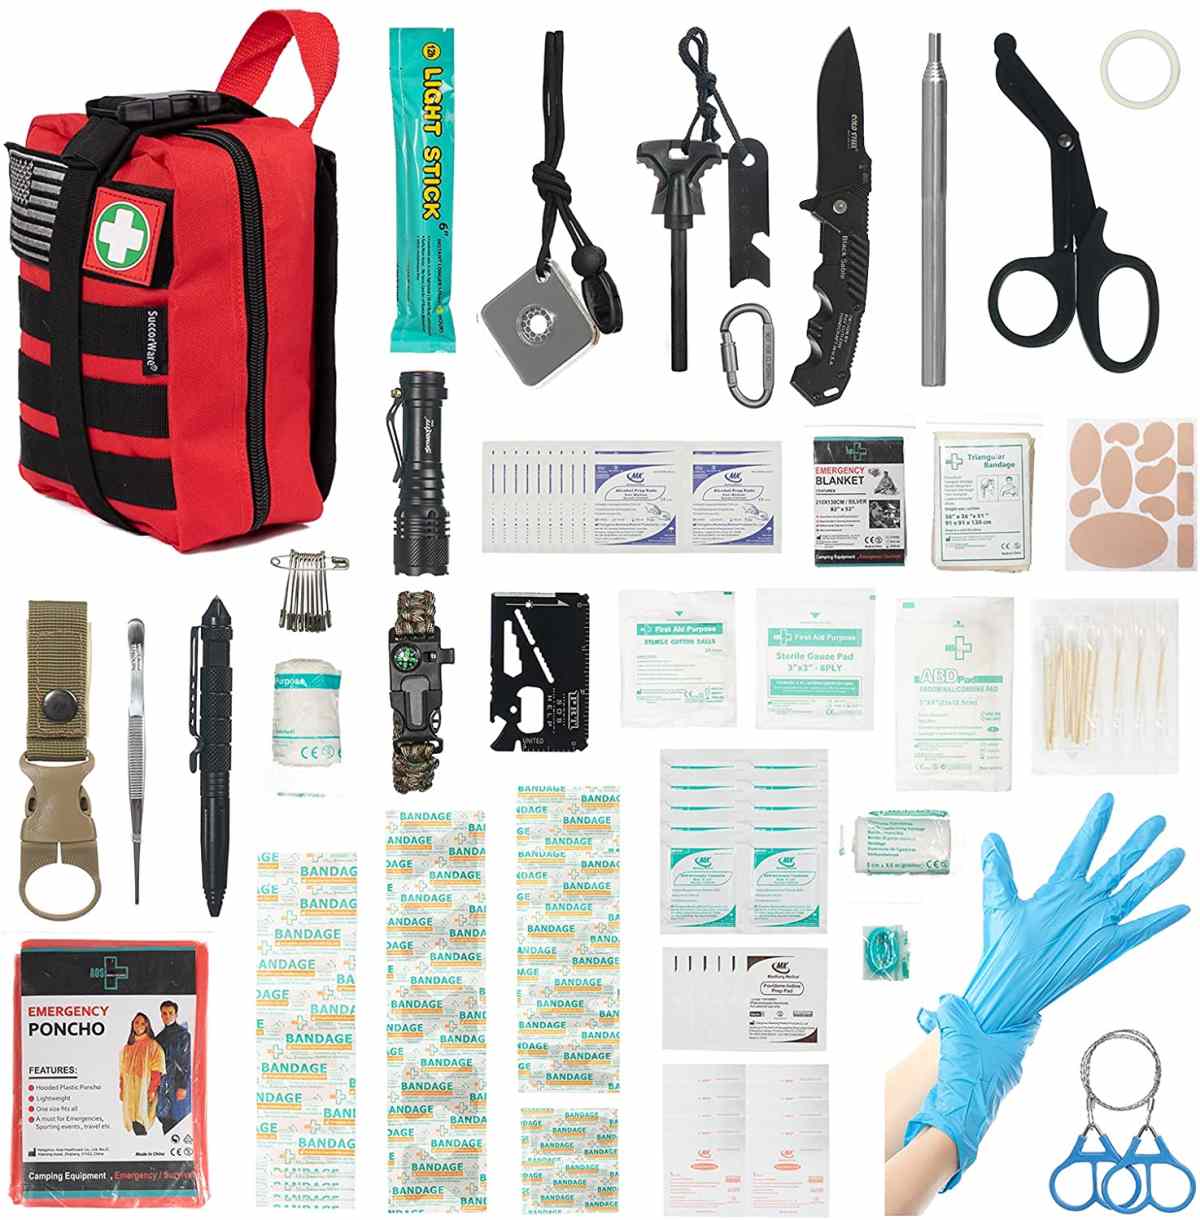 Red Multi-Purpose First Aid Survival Gear kanggo Camping